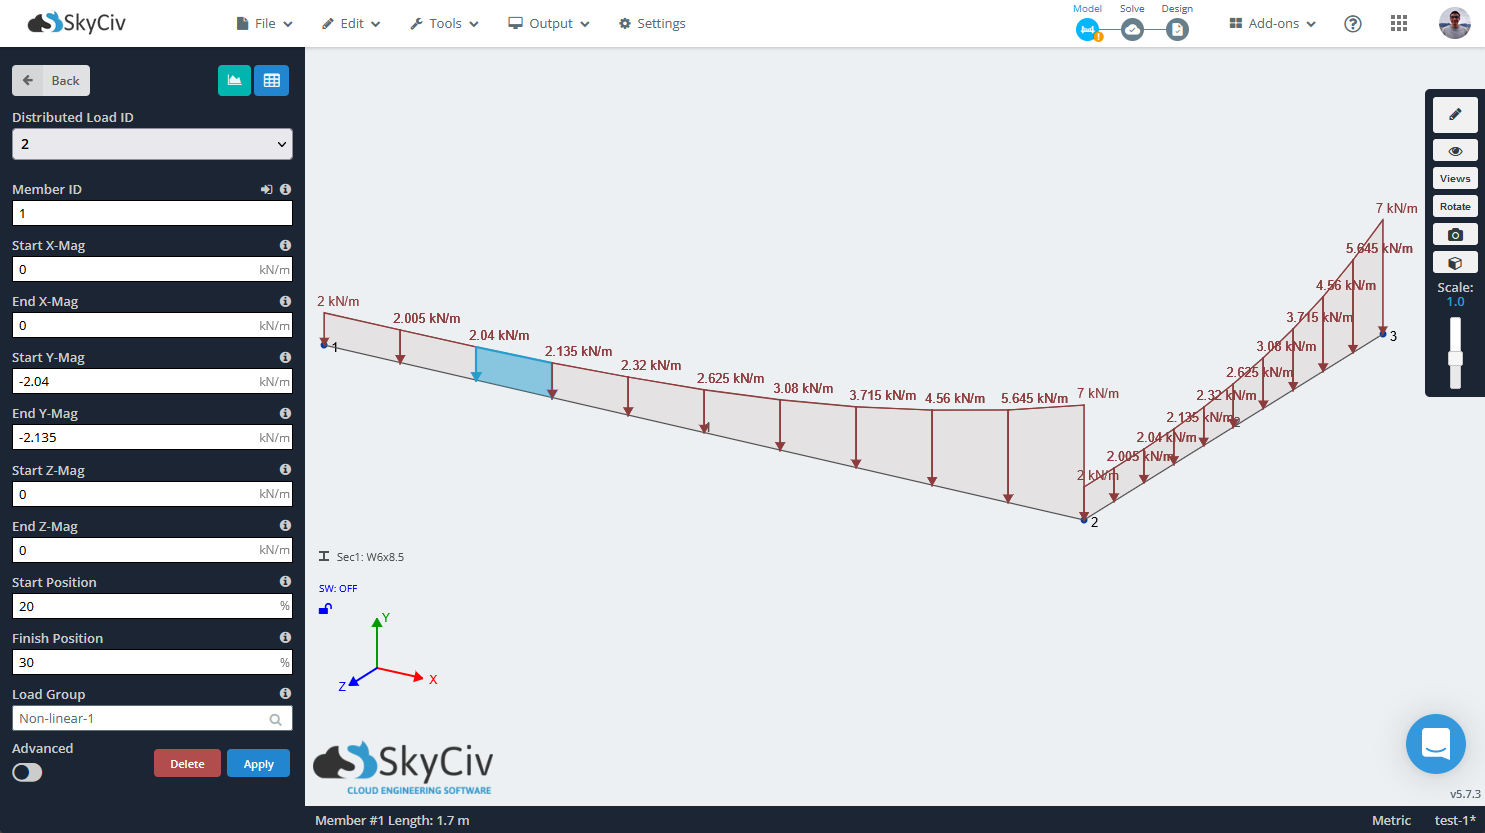 SkyCiv S3D montrant une charge distribuée non linéaire ou définie par une équation